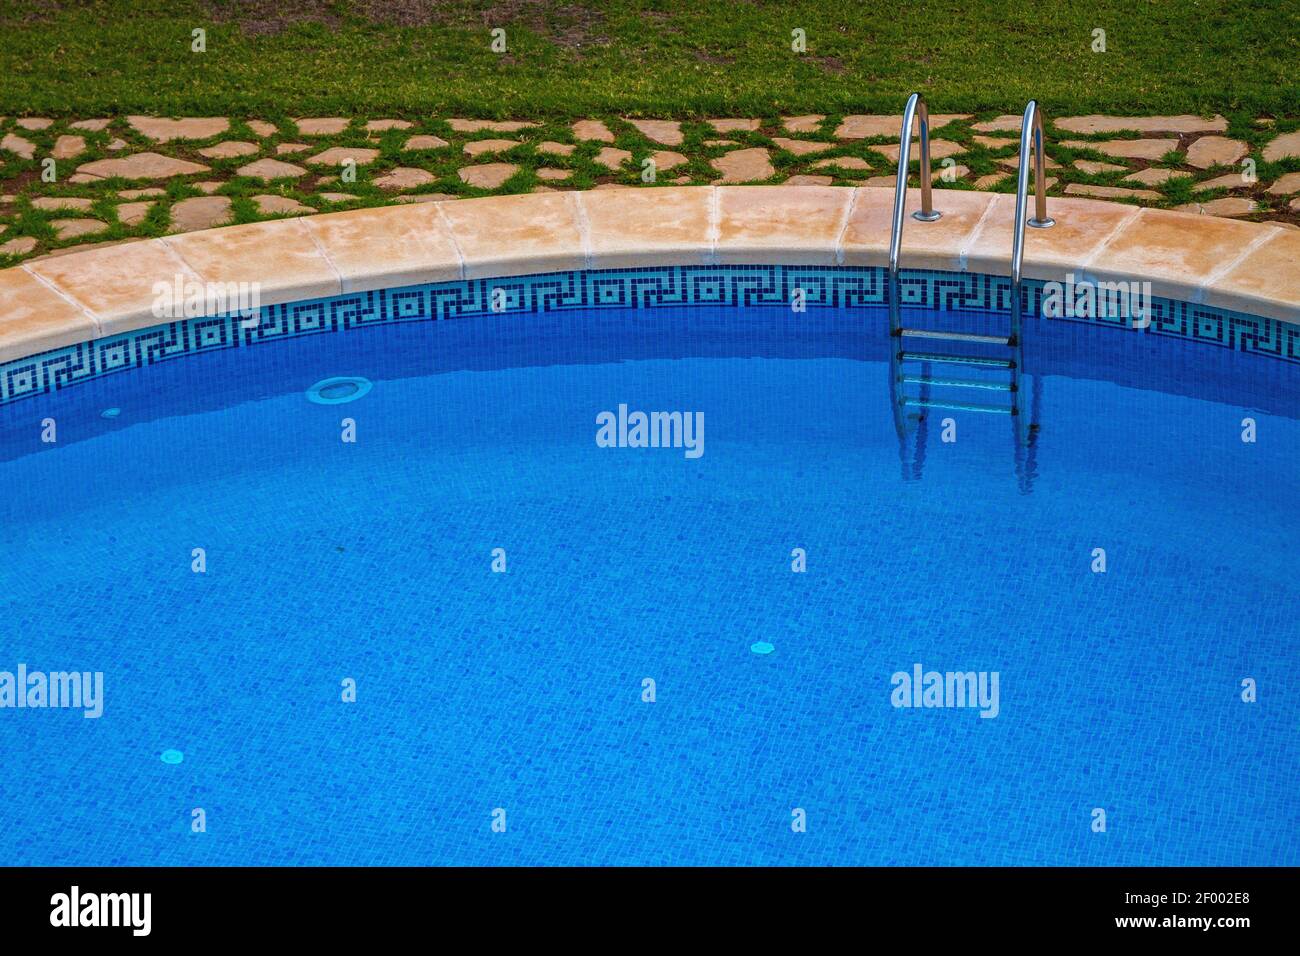 Klassisches Schwimmbad mit Rasen und gepflastertem Steinweg Stockfotografie  - Alamy